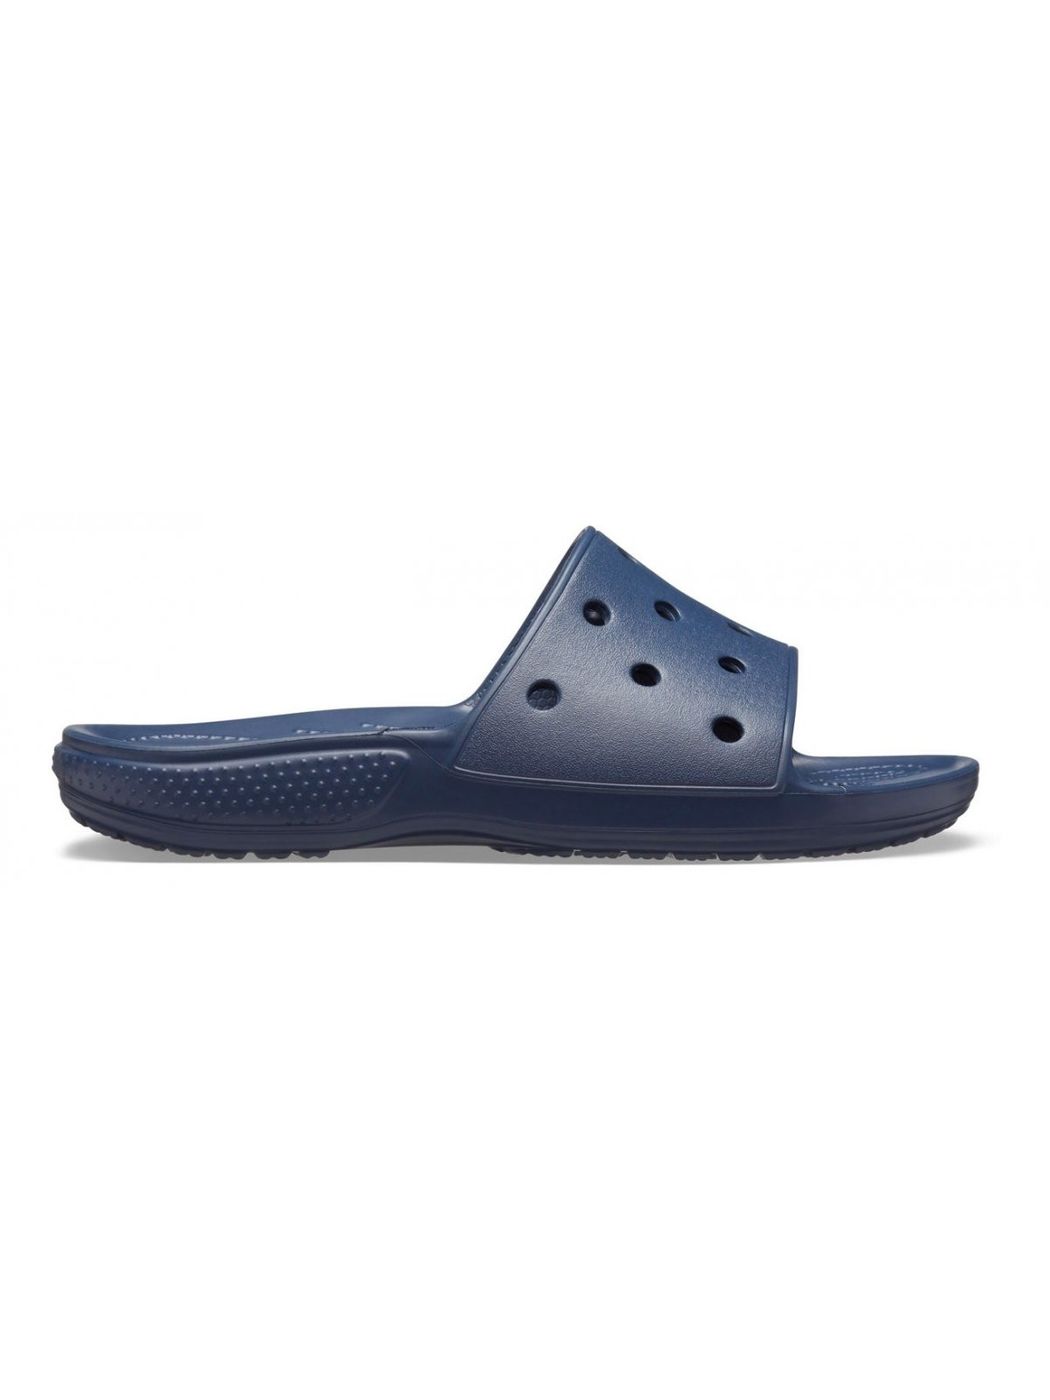 CROCS Chaussons Unisexe Adulte Classic Crocs Slide 206121 410 Bleu